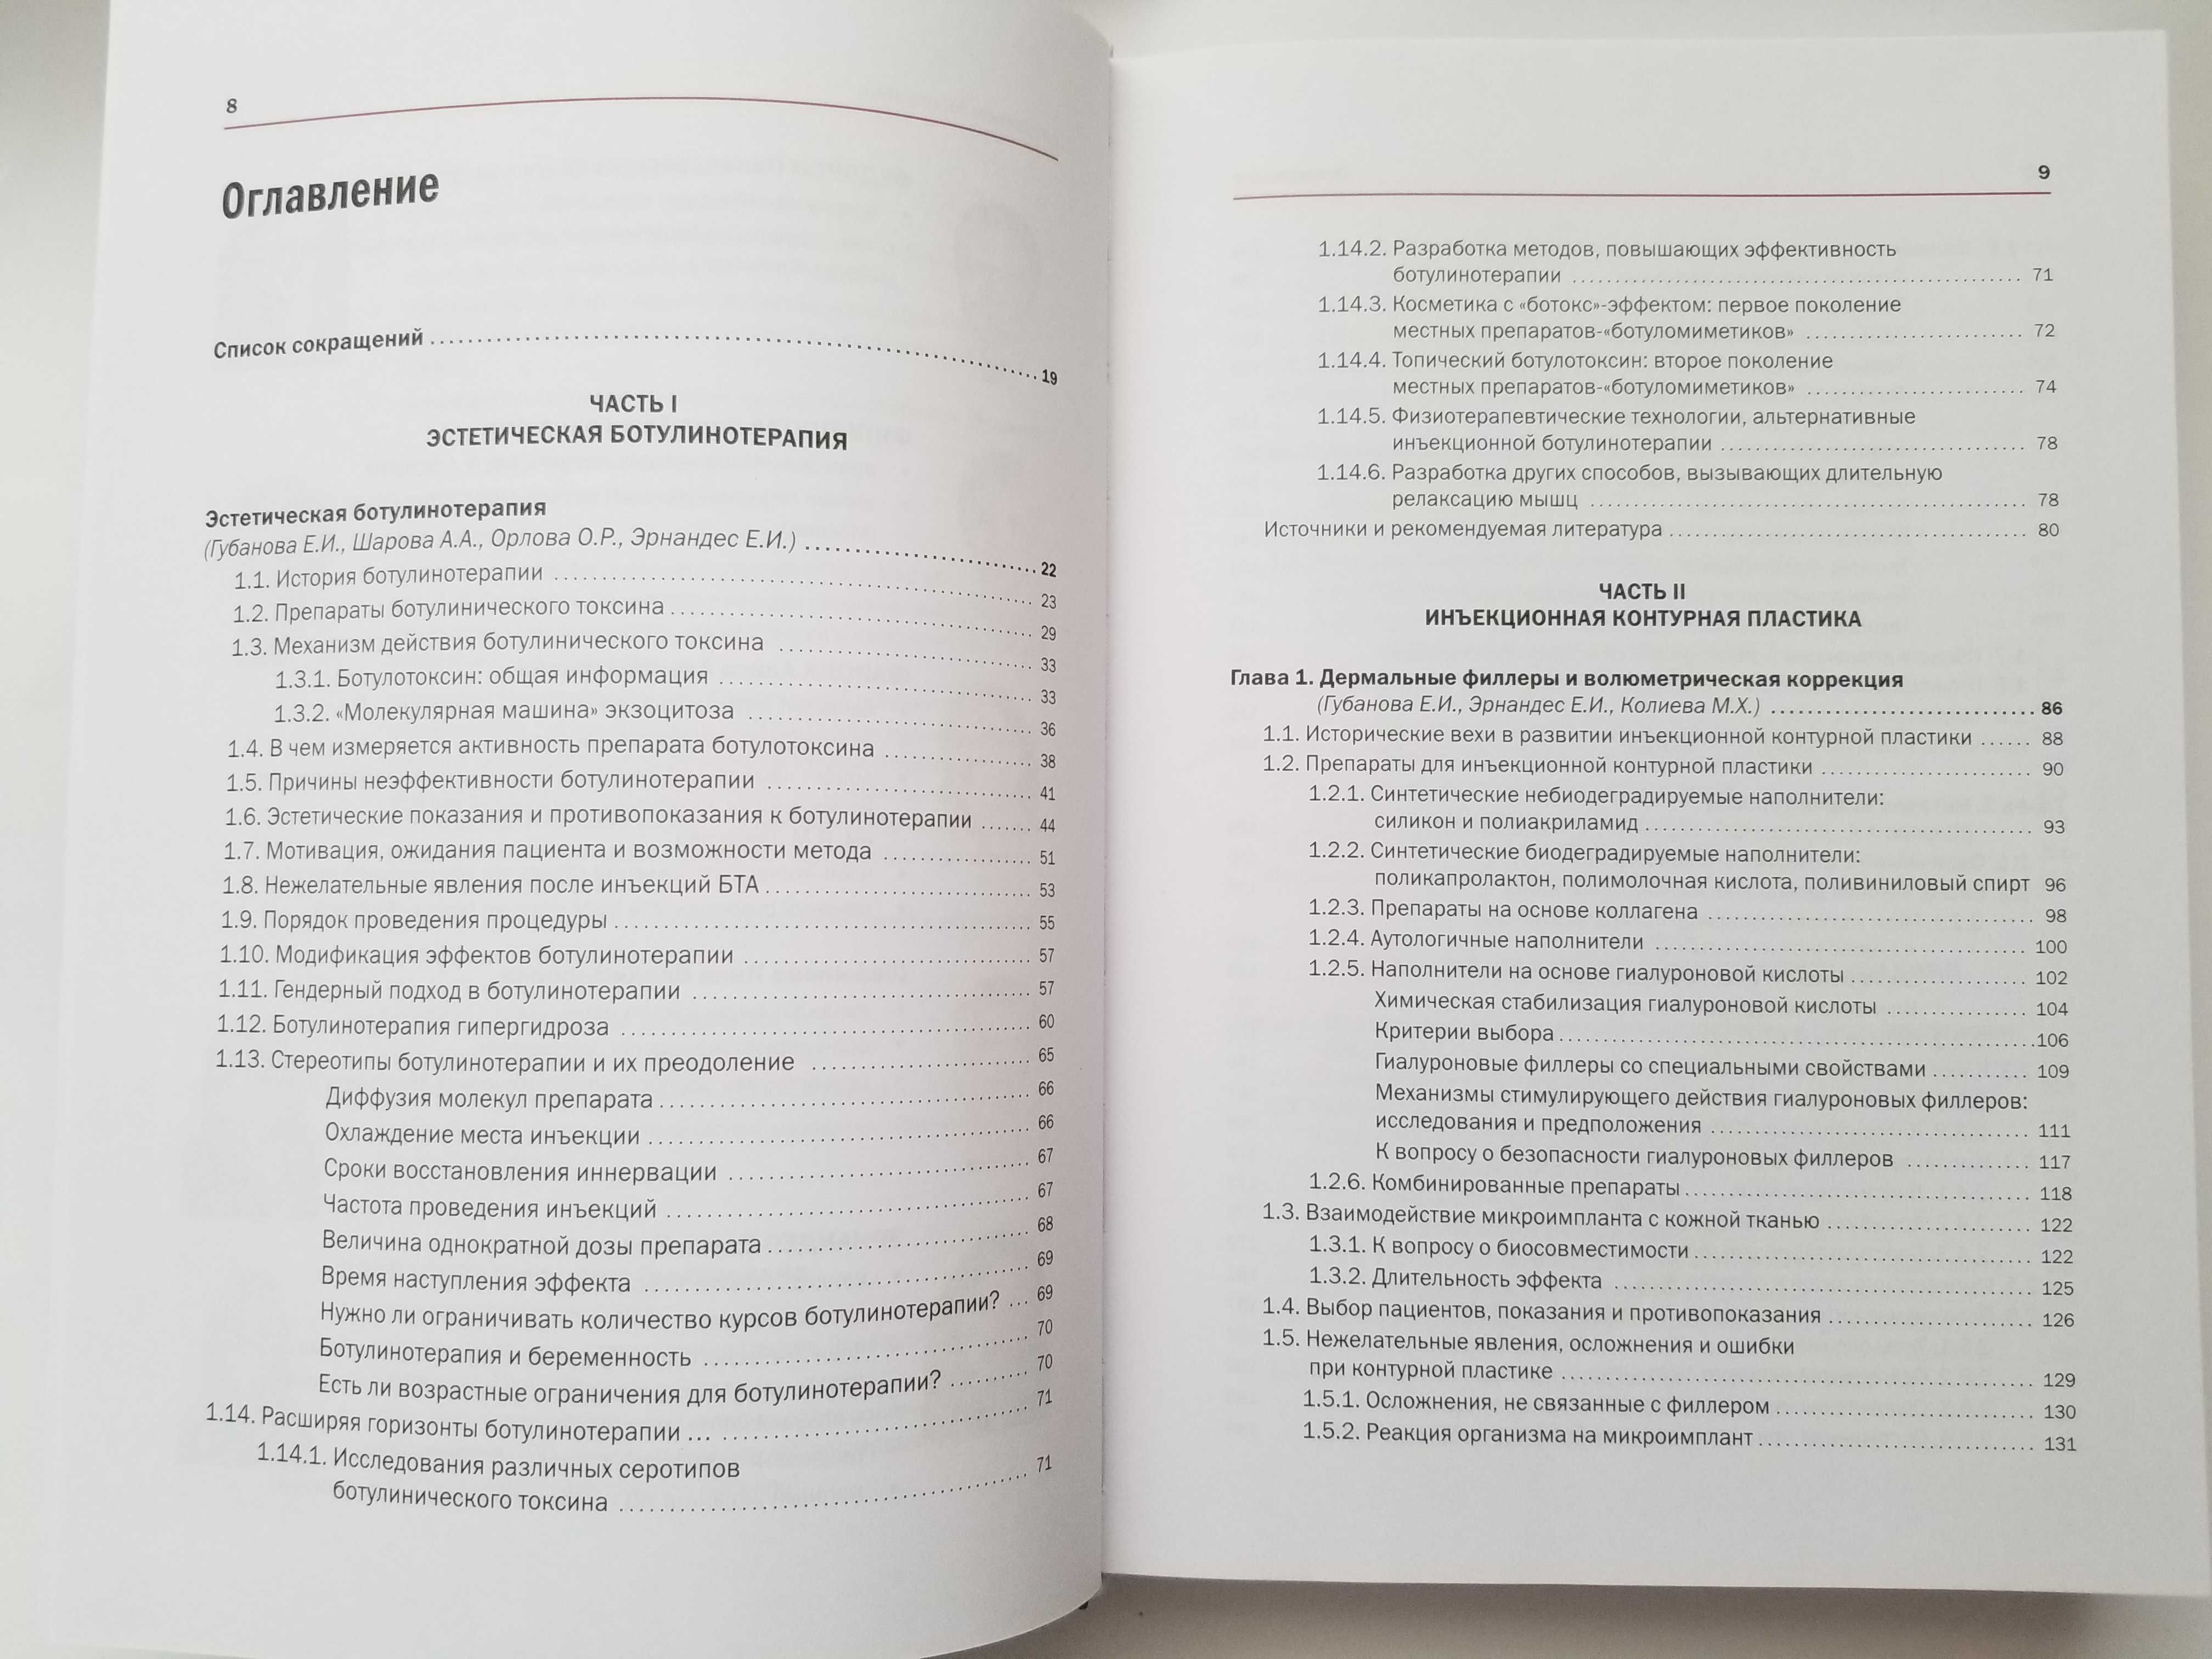 Новая косметология. Инъекционные методы в косметологии. 2-е изд.